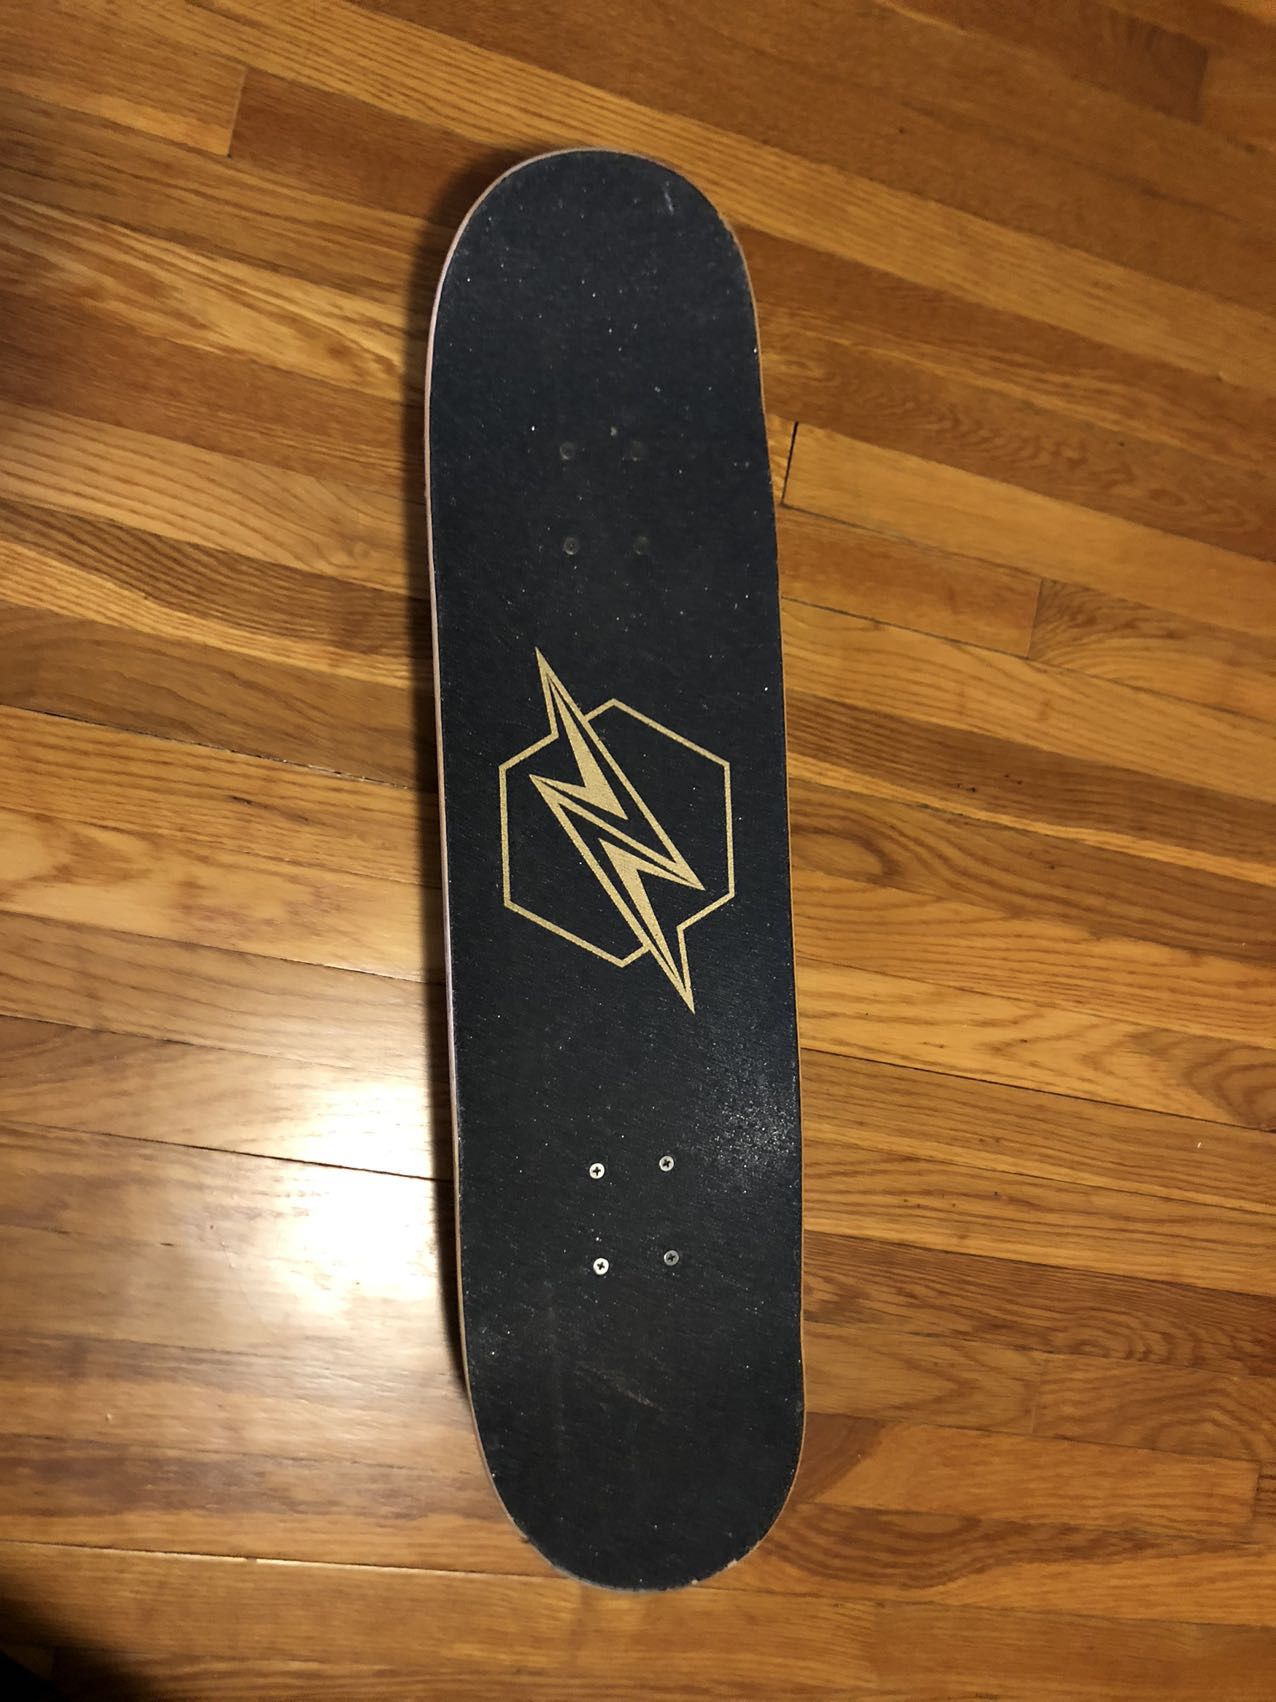 The skateboard